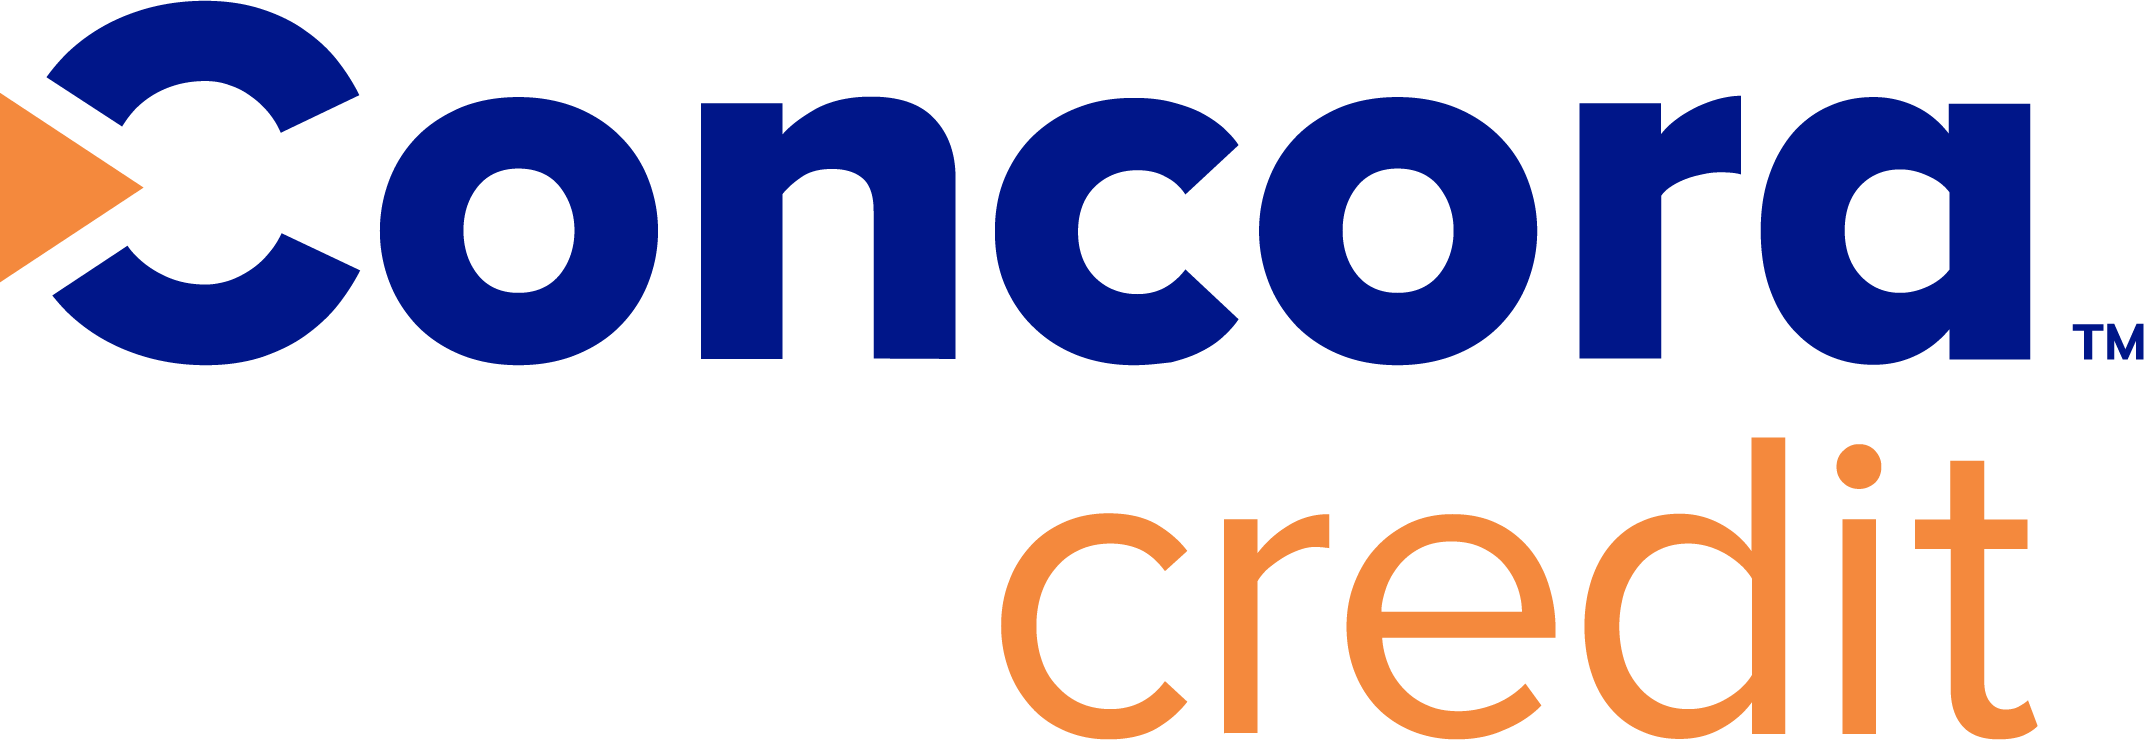 Concora Credit logo